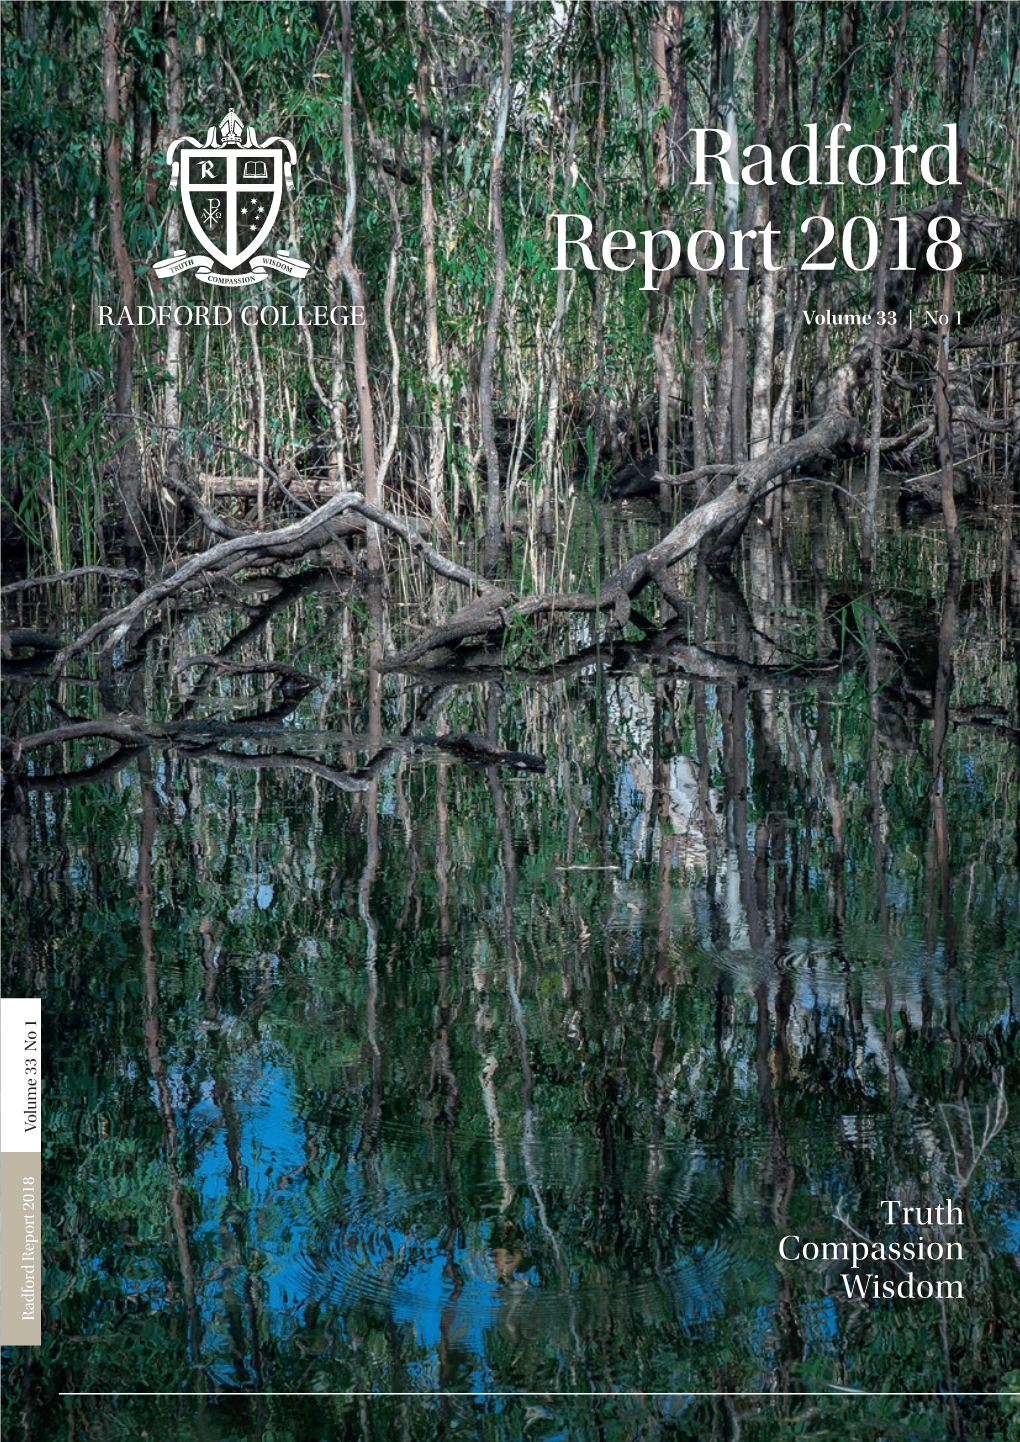 Radford Report 2018 Volume 33 No 1 Report 2018 Radford Volume 33 | No 1 No Contents